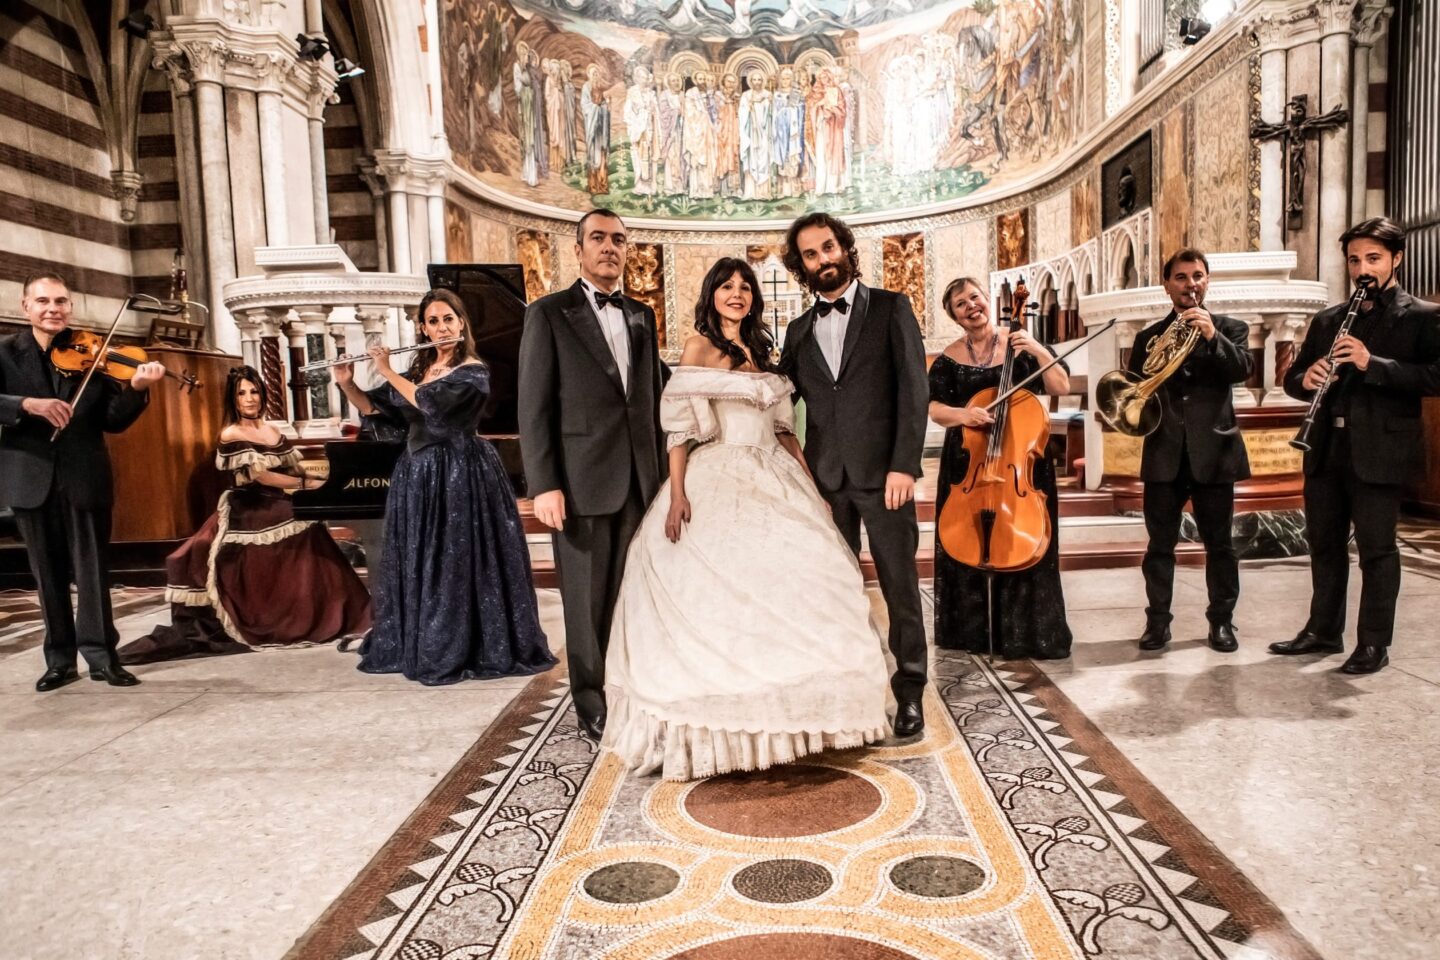 Opera concerts season schedule in Rome I Virtuosi dell'opera di Roma